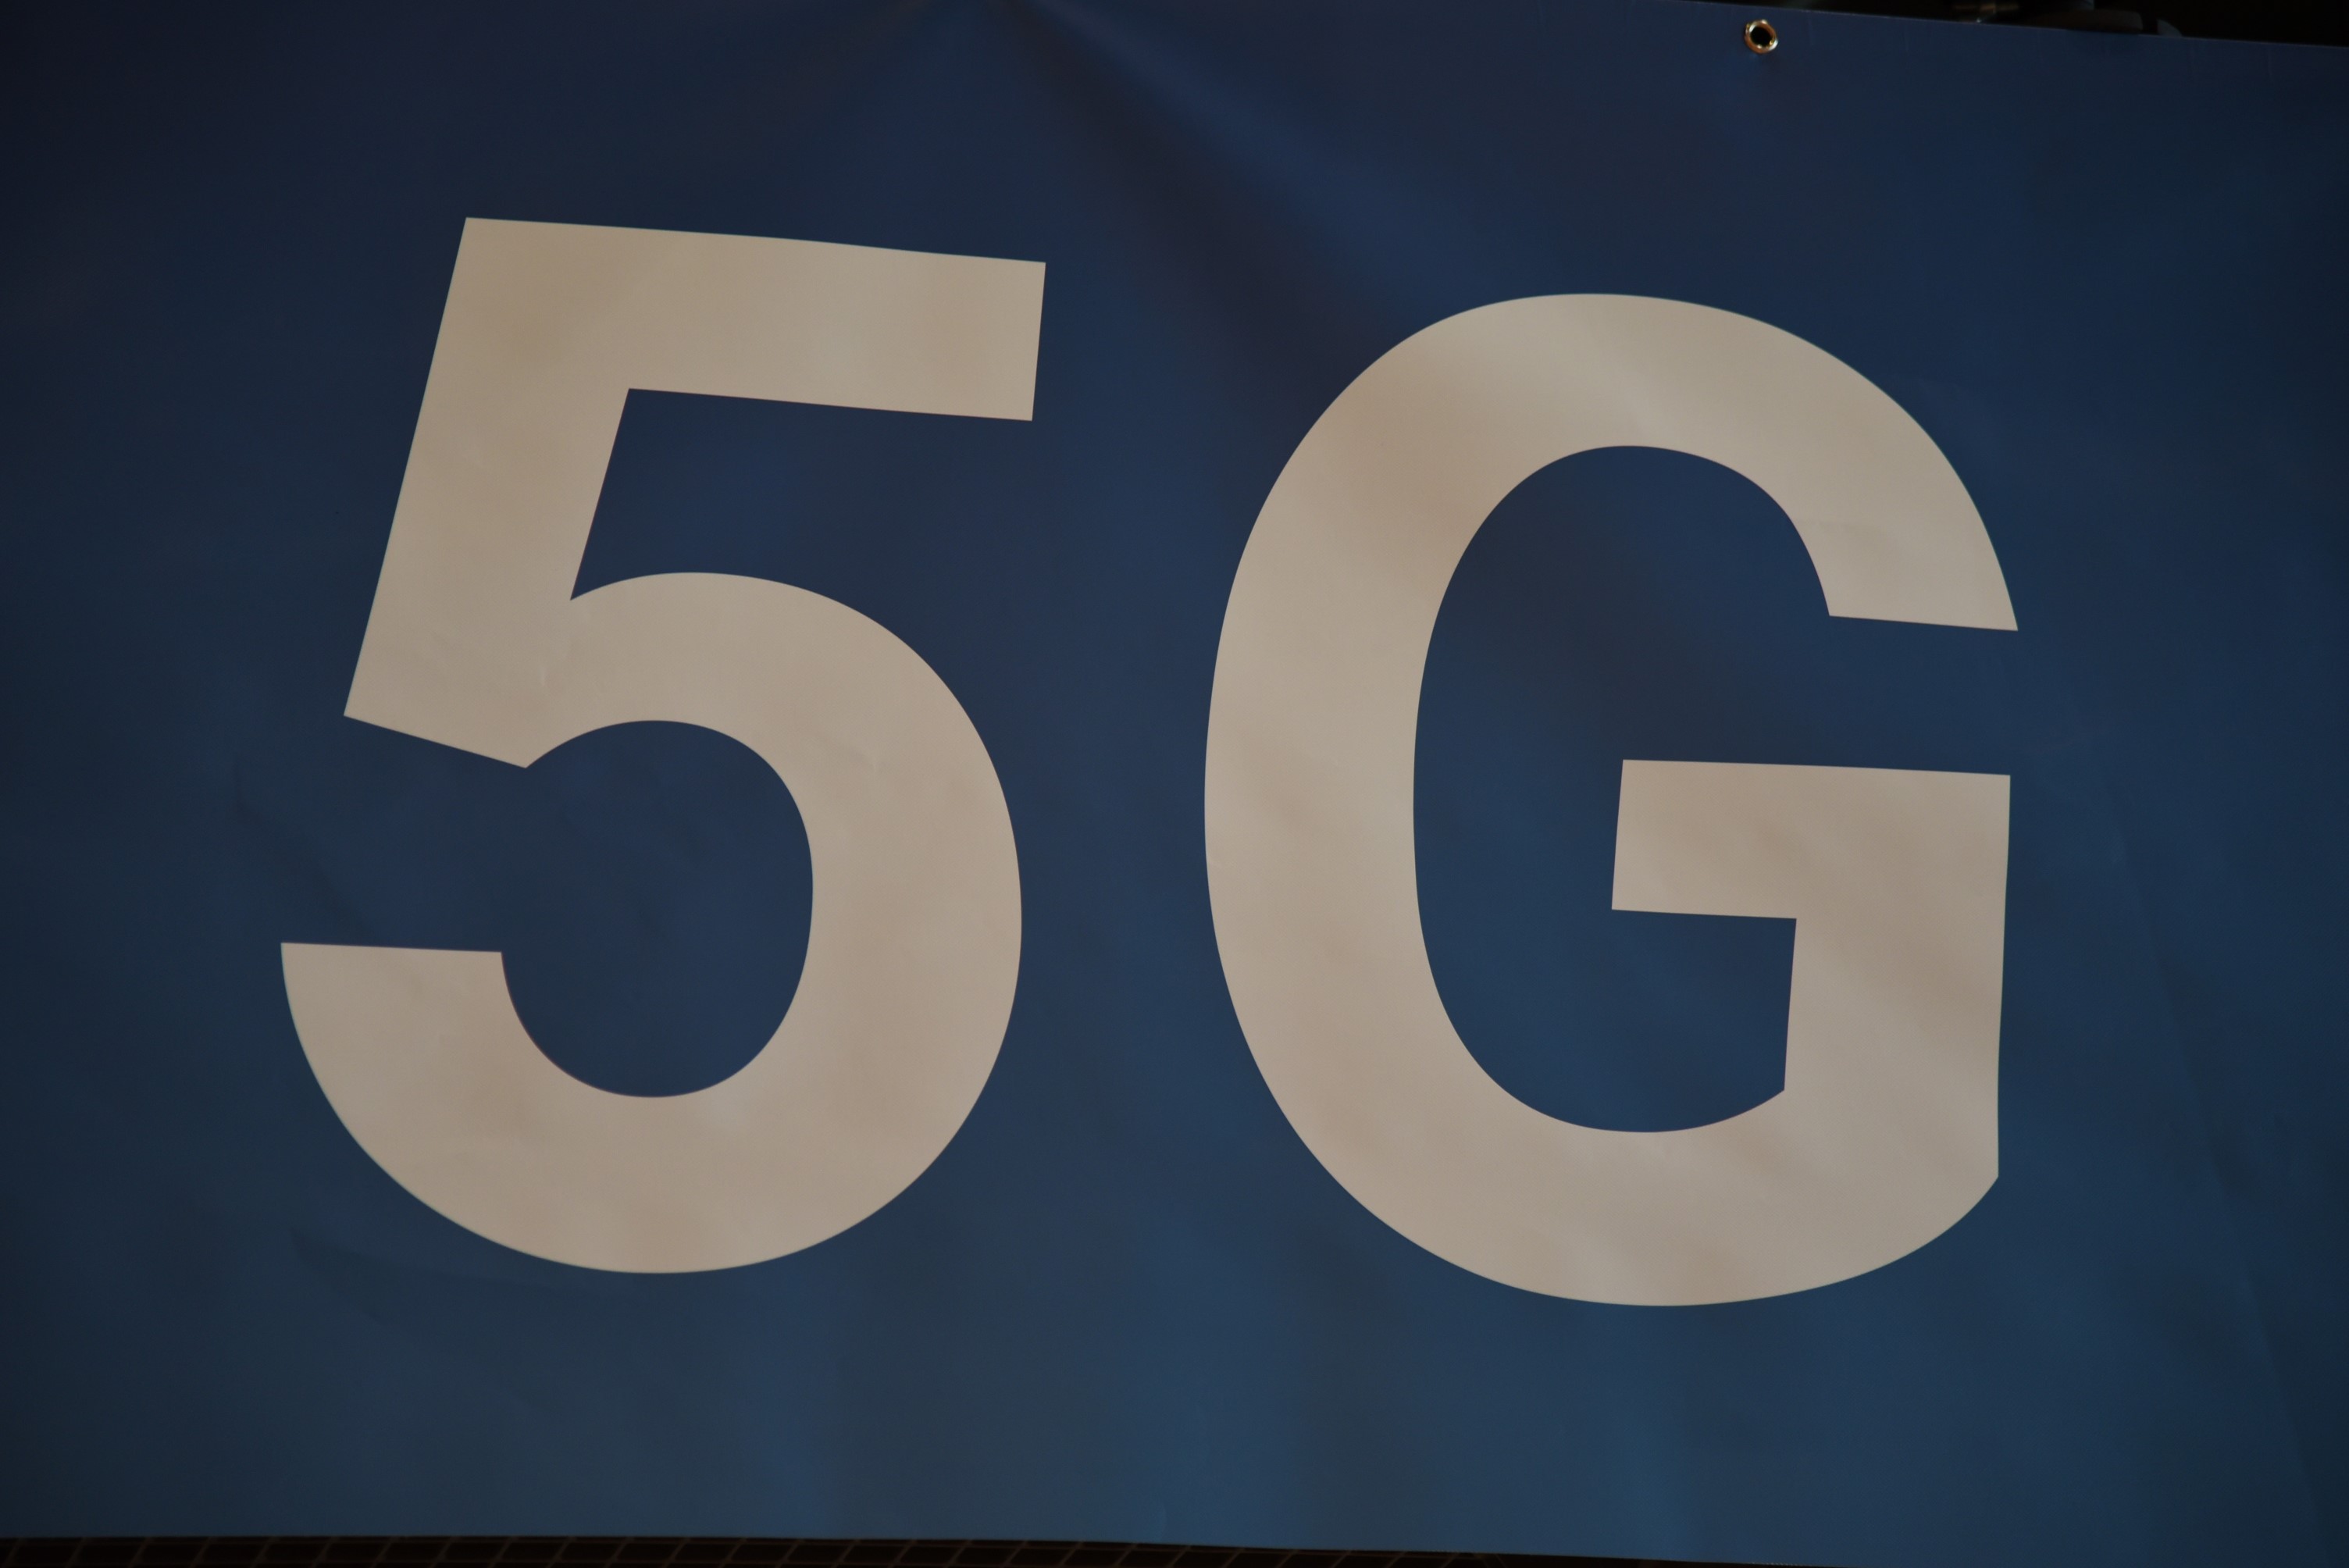 IEEE 5G Summit 2016